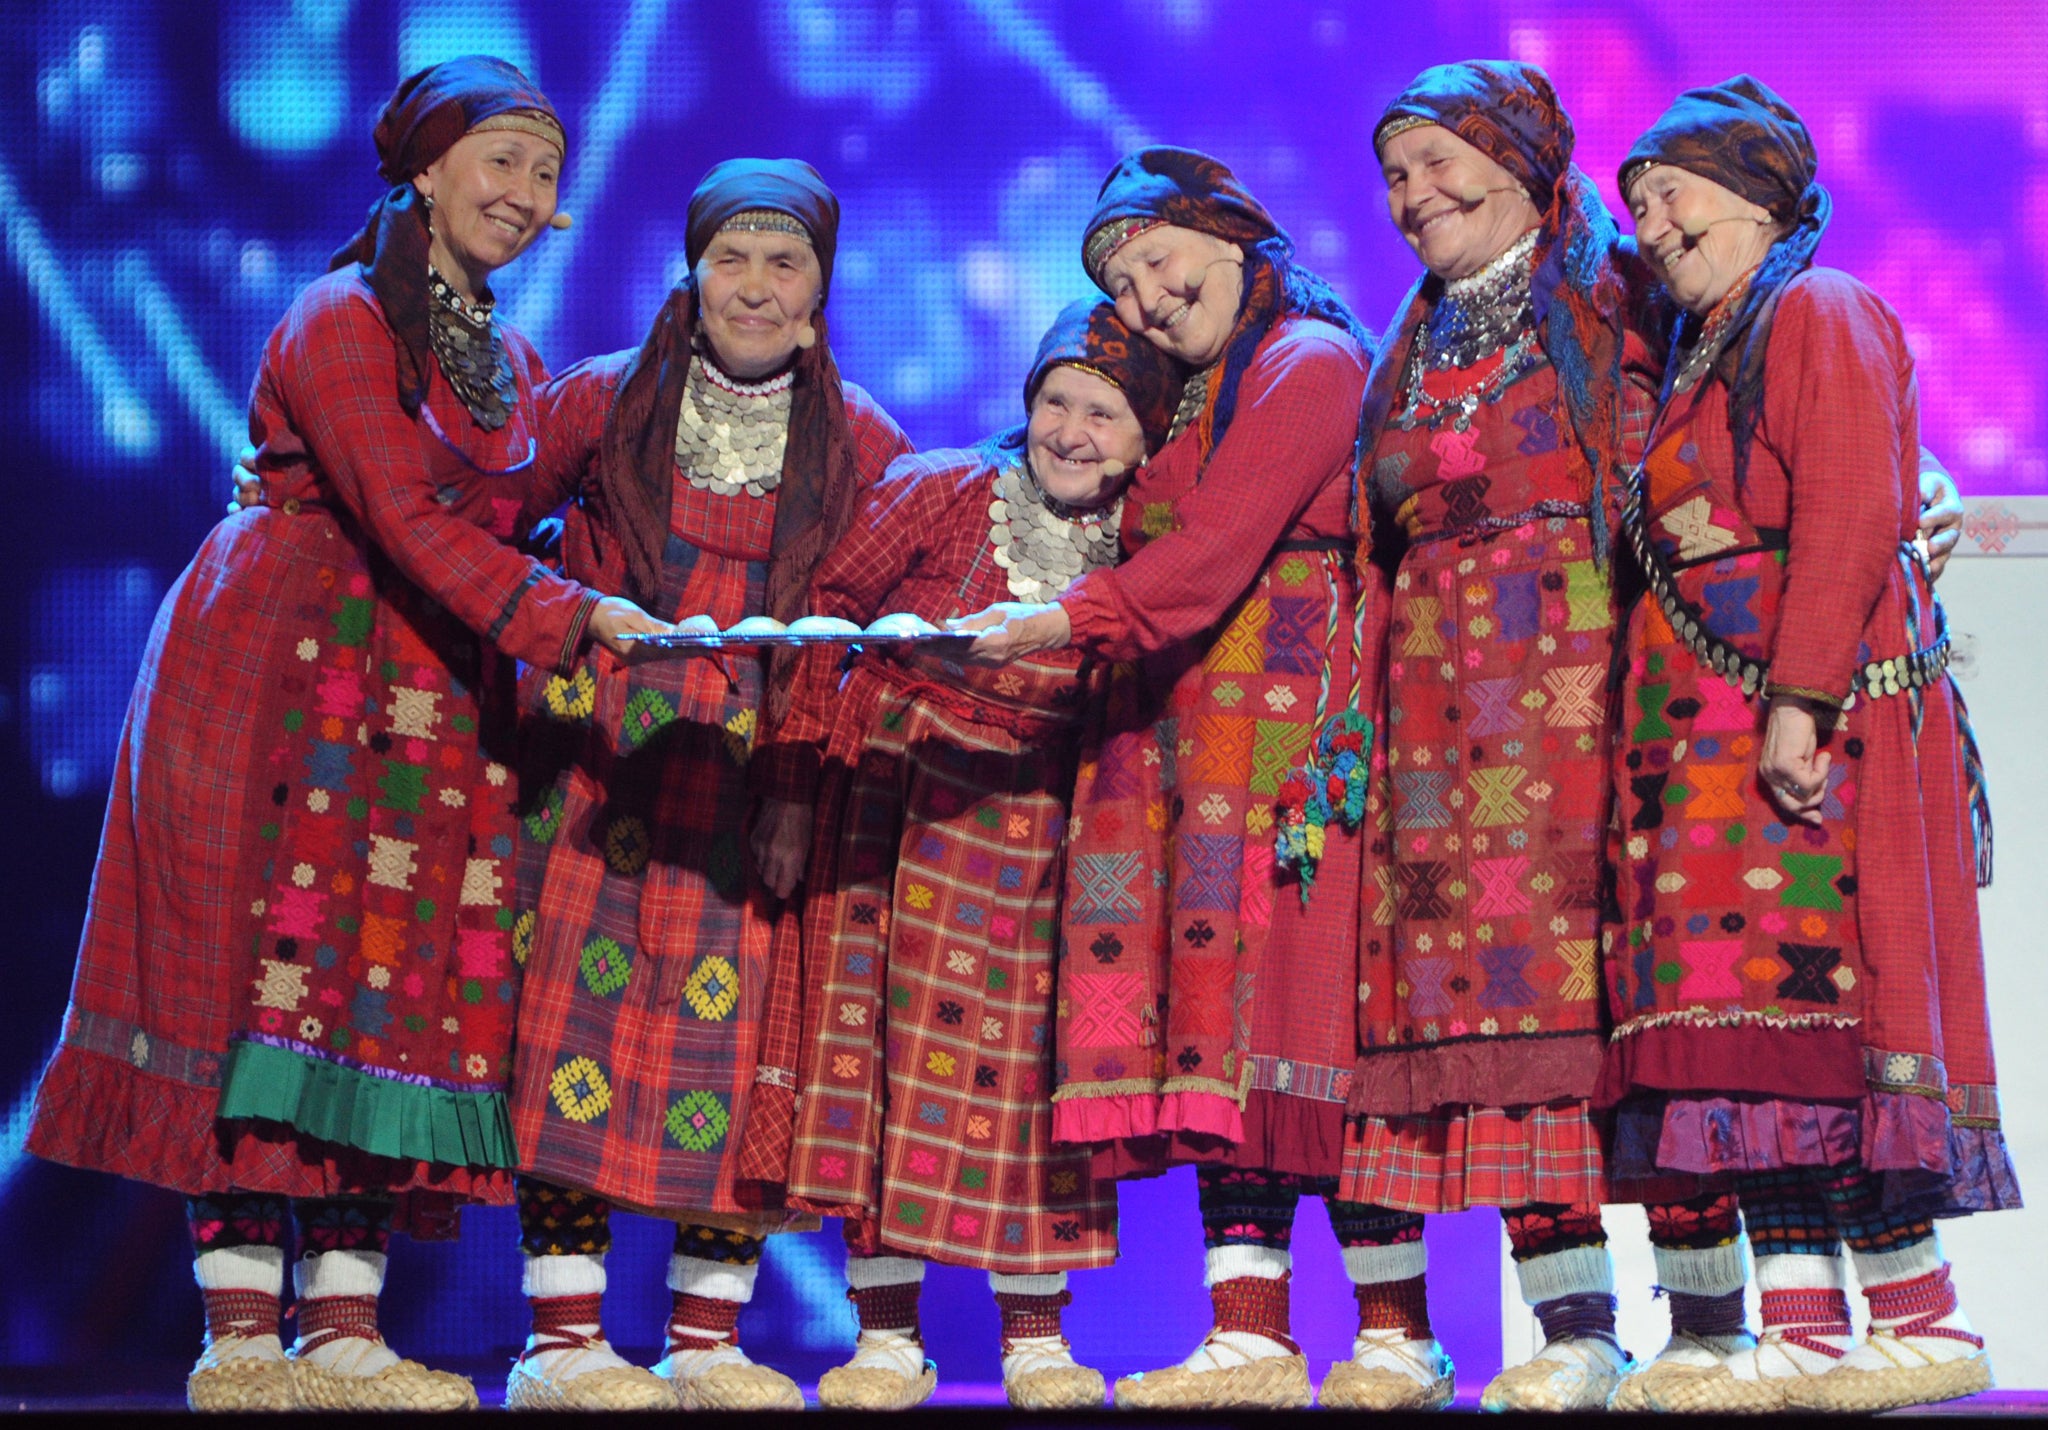 Eurovision 2012 runners up, Russia's Buranovskiye Babushki